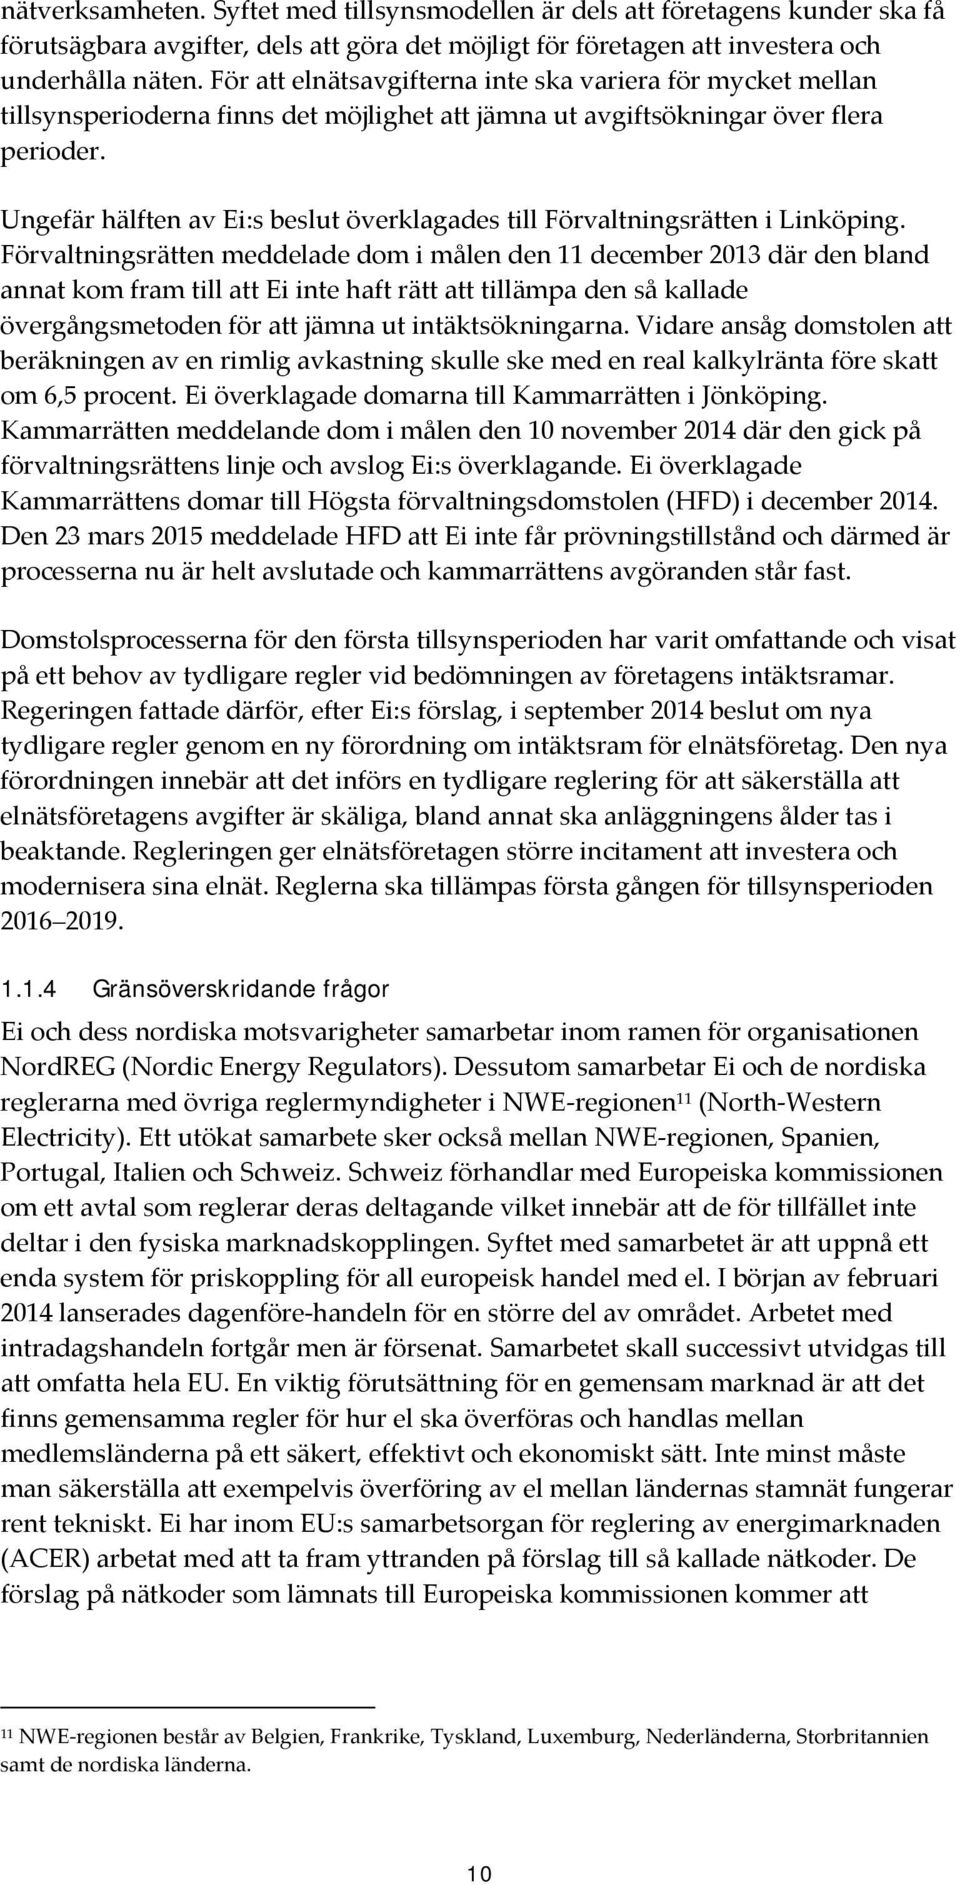 Ungefär hälften av Ei:s beslut överklagades till Förvaltningsrätten i Linköping.